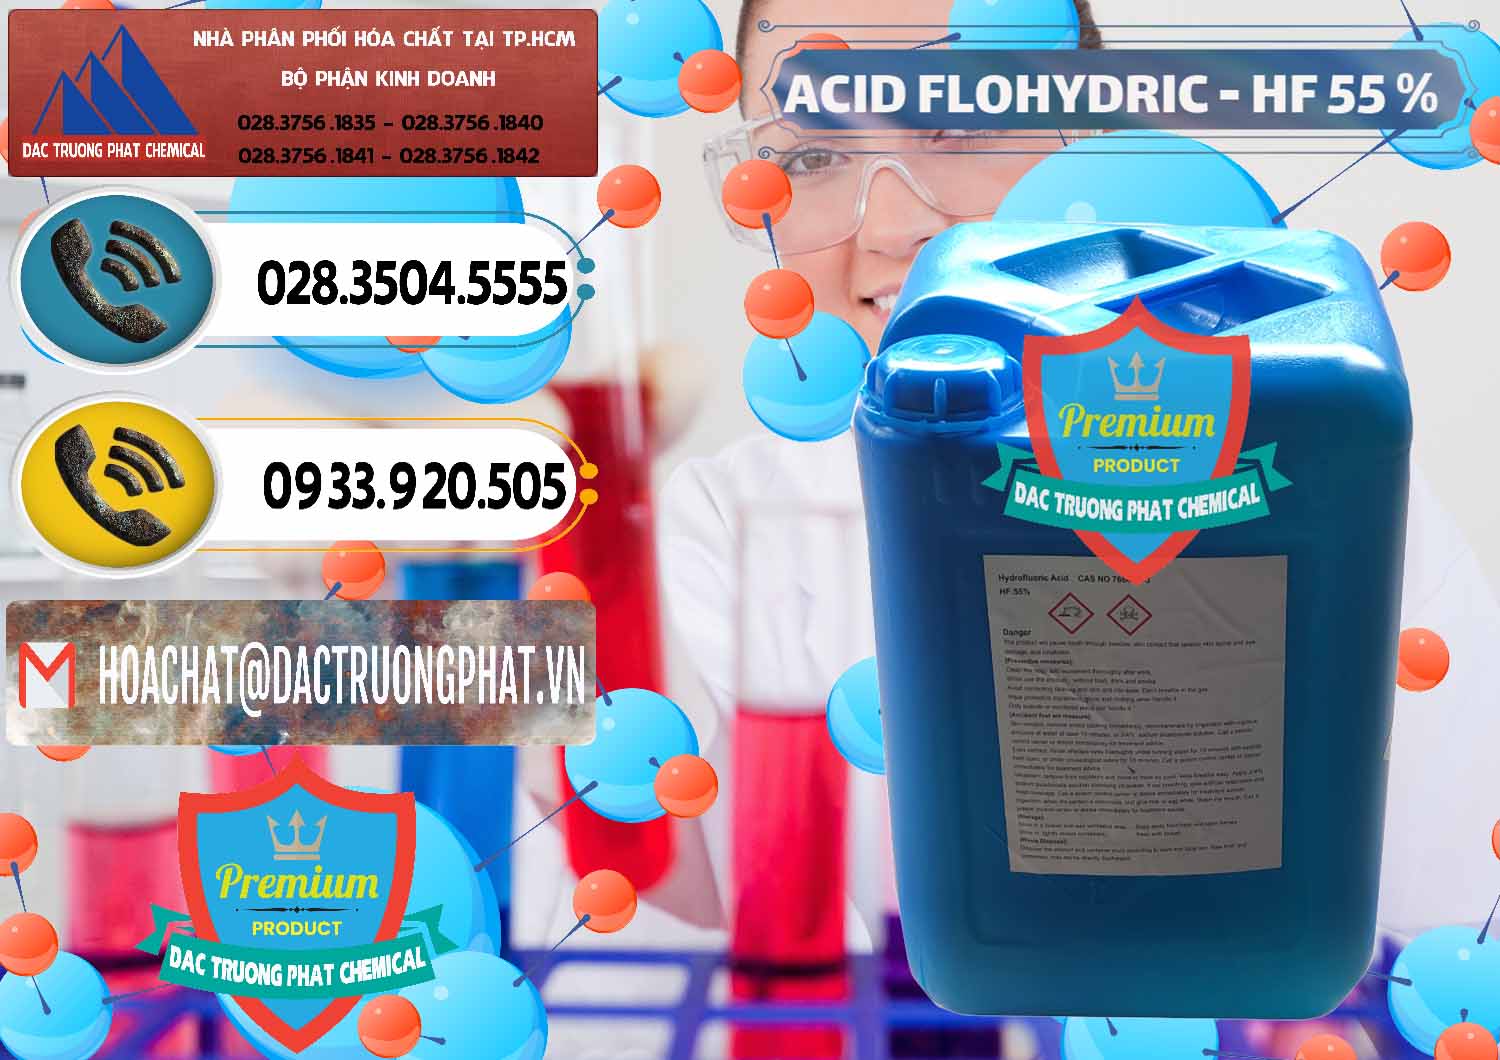 Nhà cung cấp & bán Axit HF - Acid HF 55% Can Xanh Trung Quốc China - 0080 - Chuyên cung cấp _ phân phối hóa chất tại TP.HCM - hoachatdetnhuom.vn